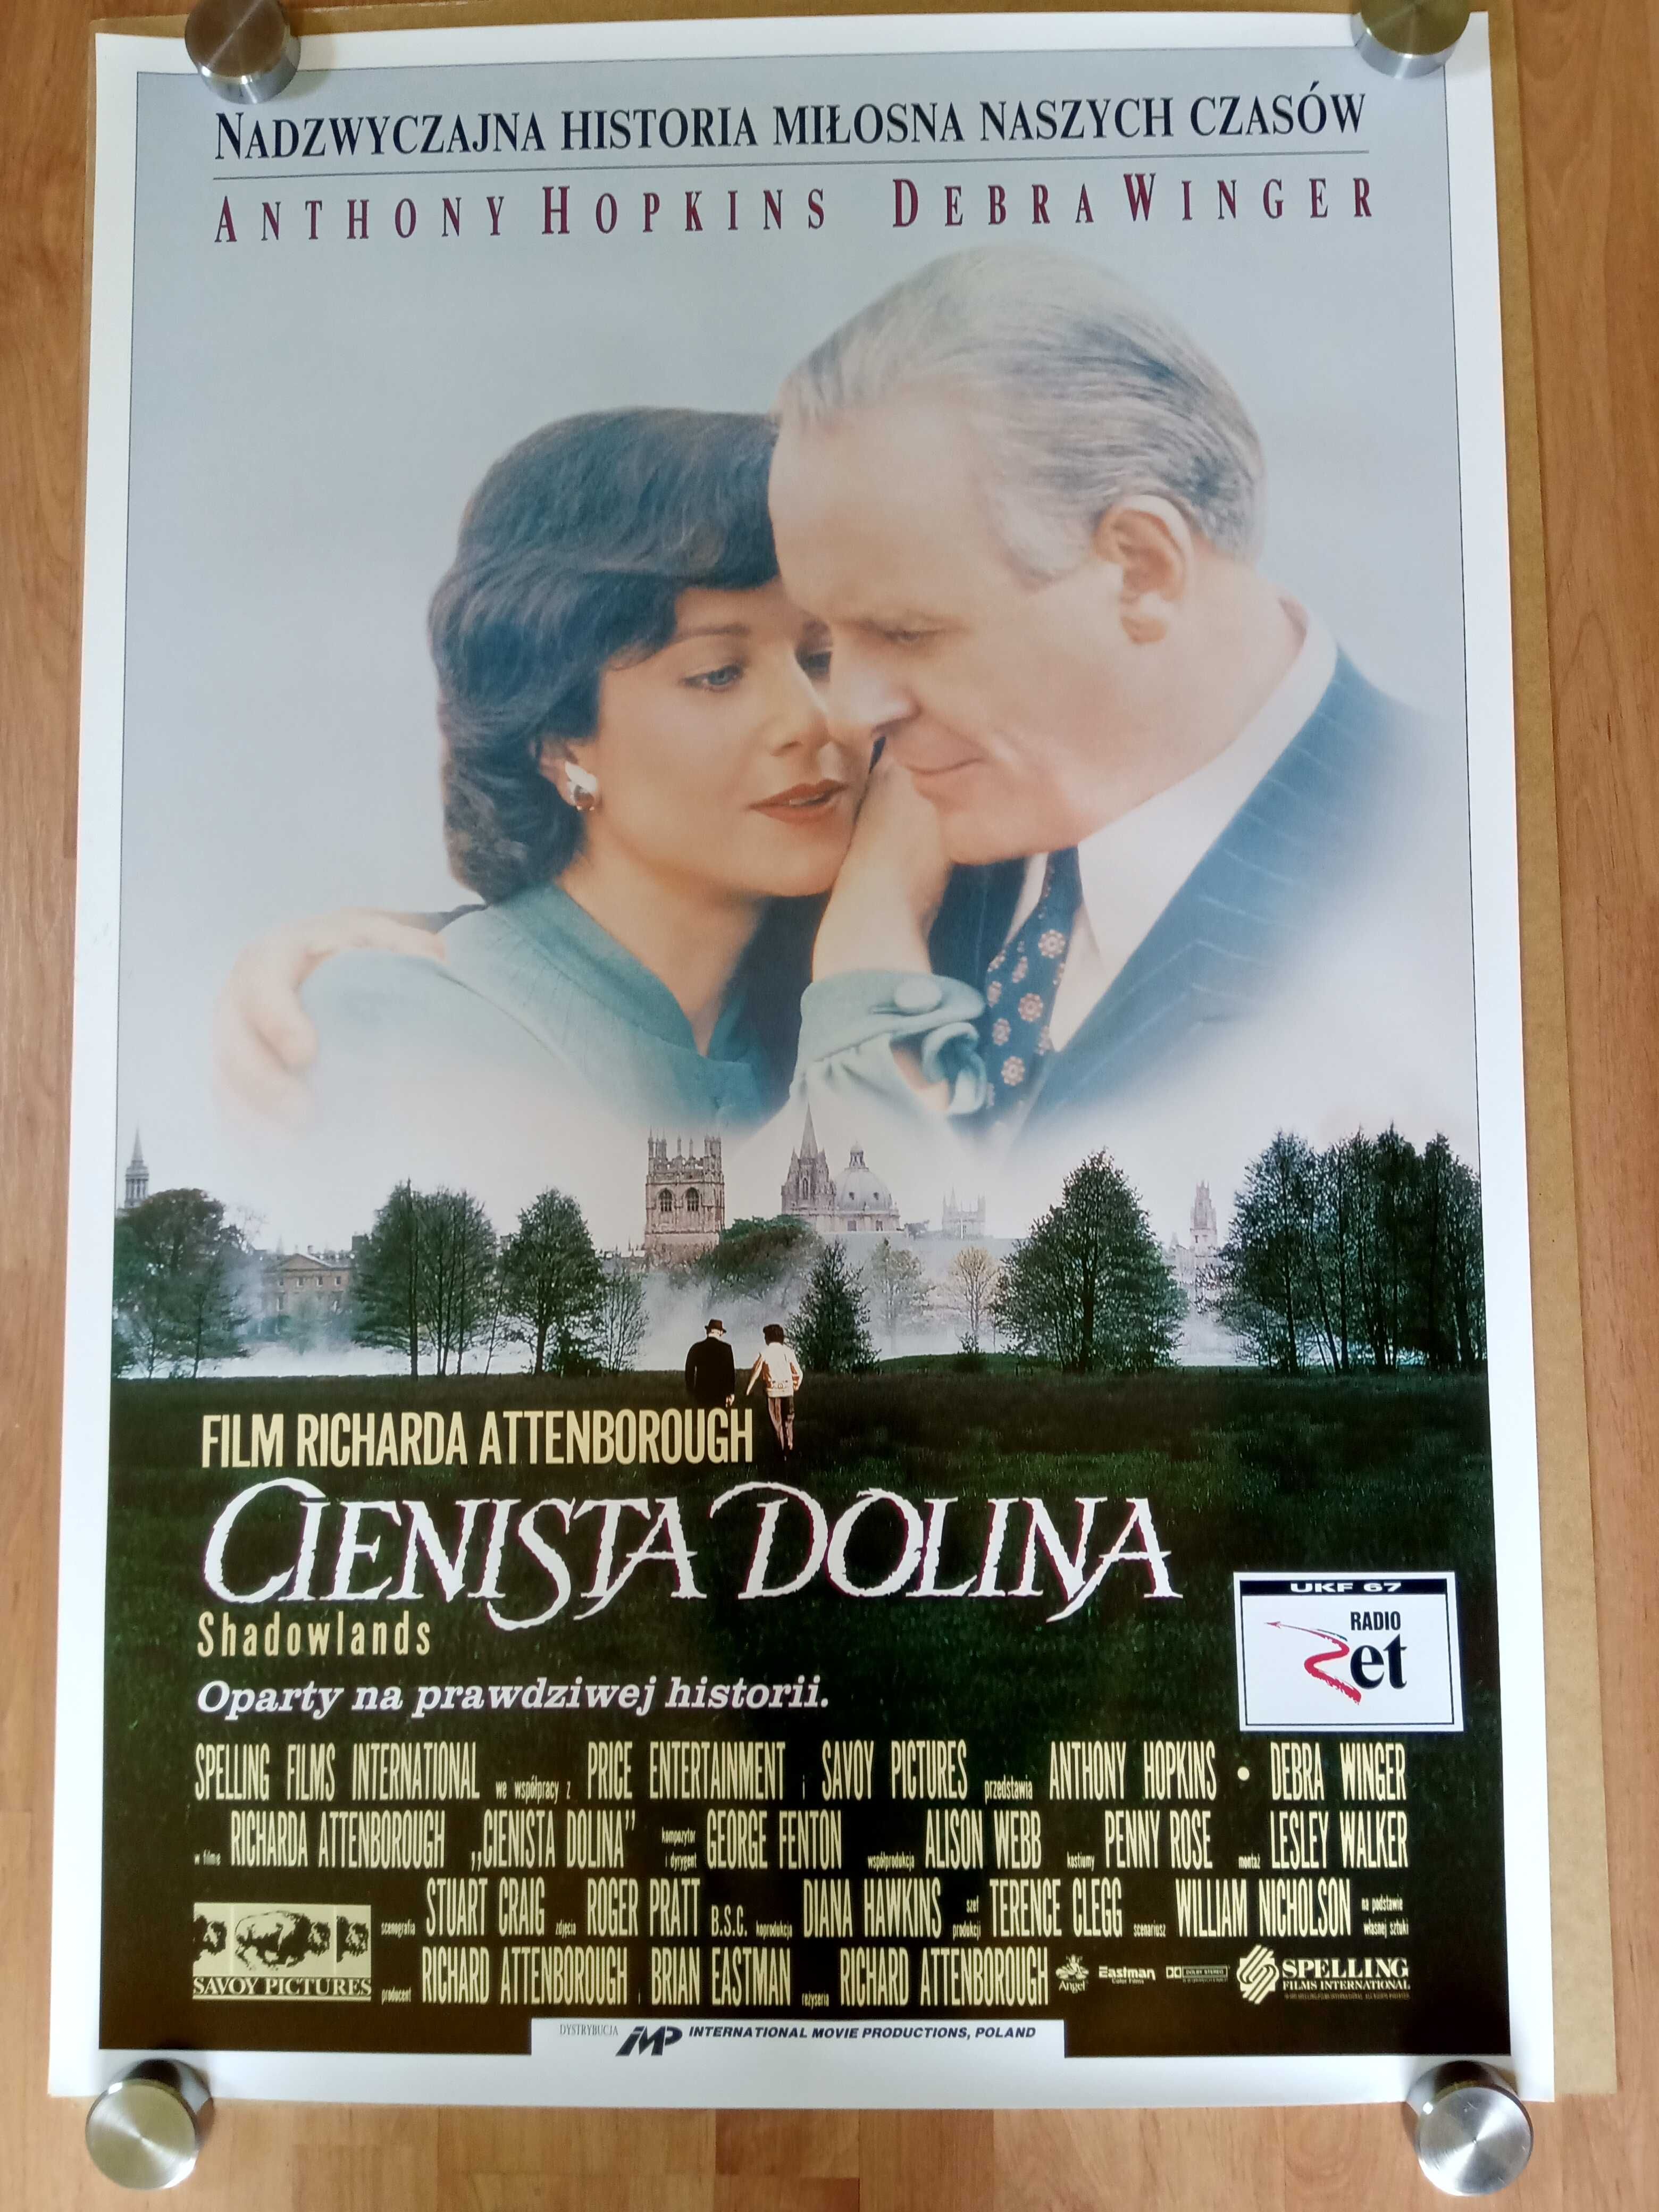 Cienista dolina Oryginalny plakat kinowy z 1993 roku.